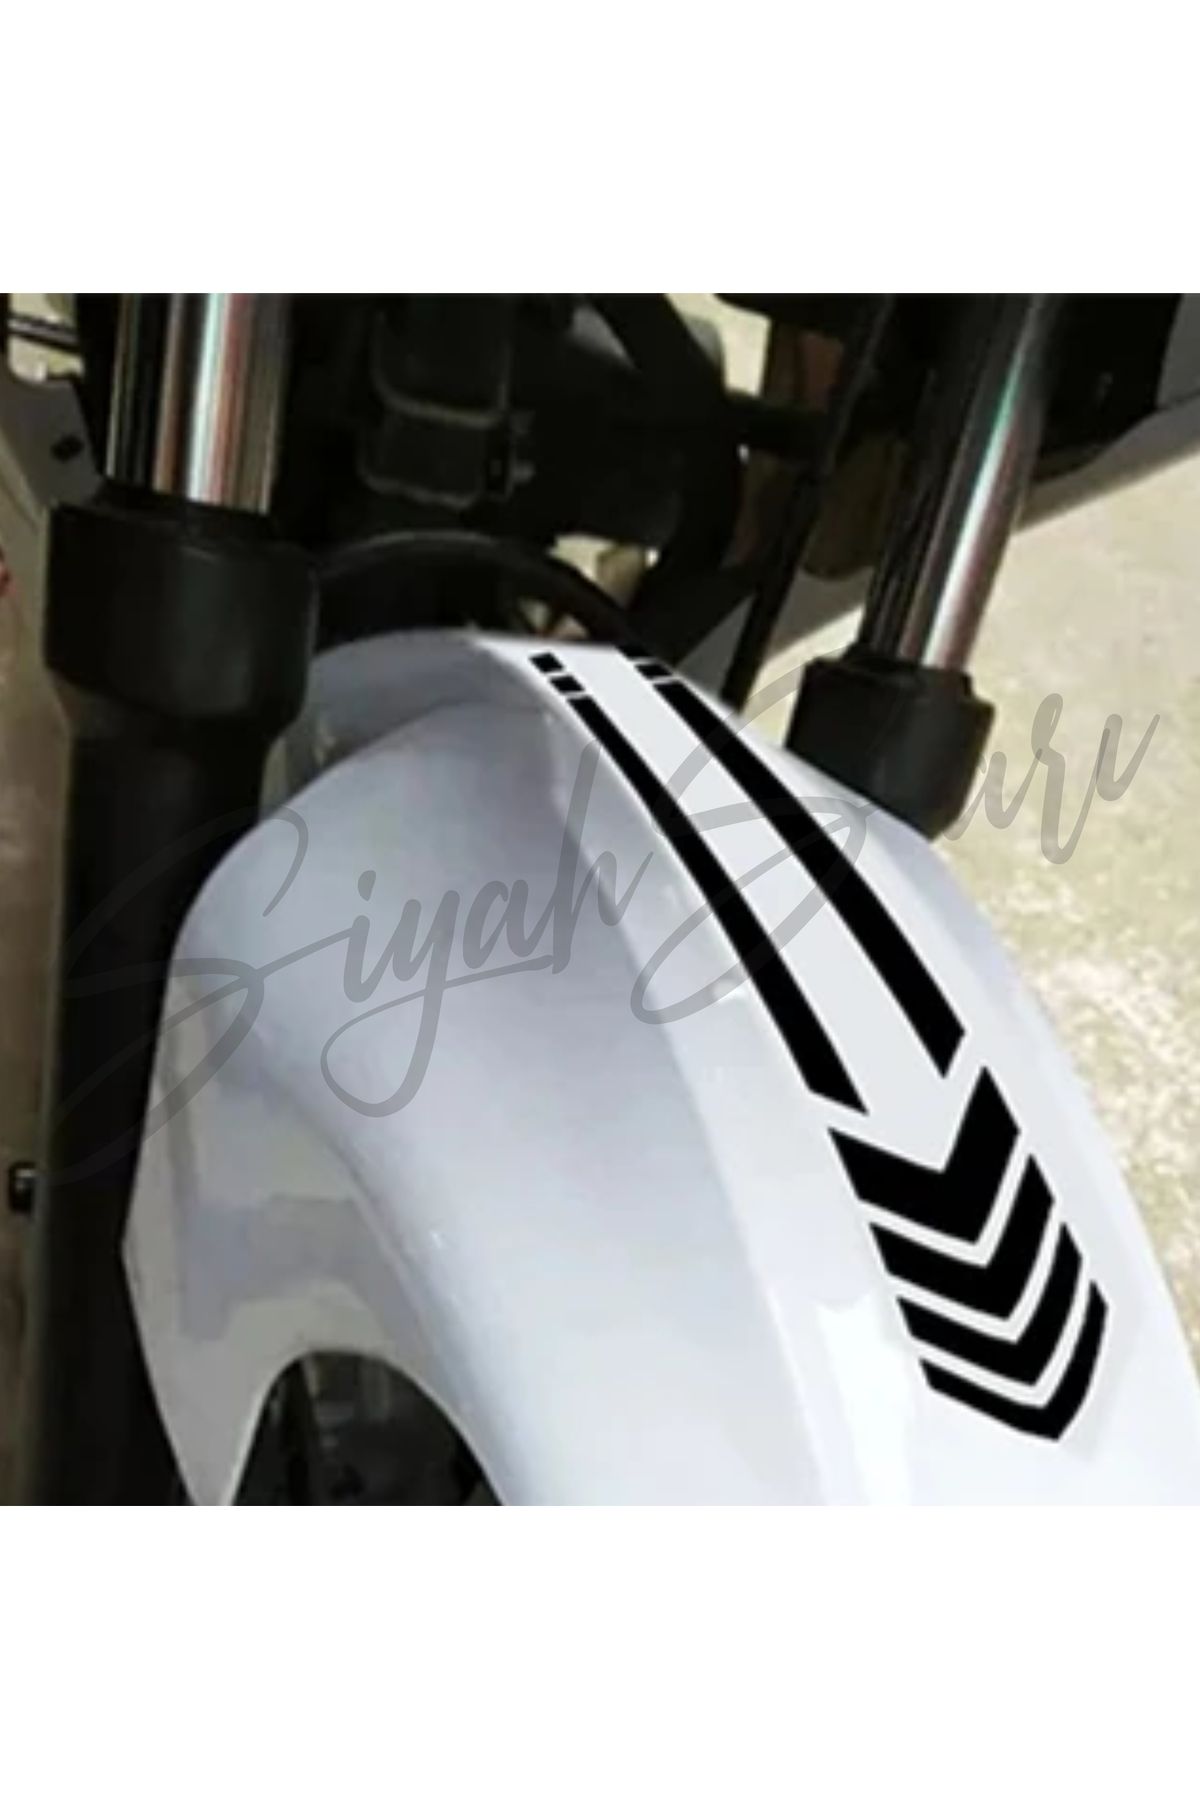 S&S HEDİYELİK EŞYA Motor Ön Teker Şerit 35x6,5 Cm Kask Depo Kapağı Araba Araç Otomobil Motorsiklet Sticker